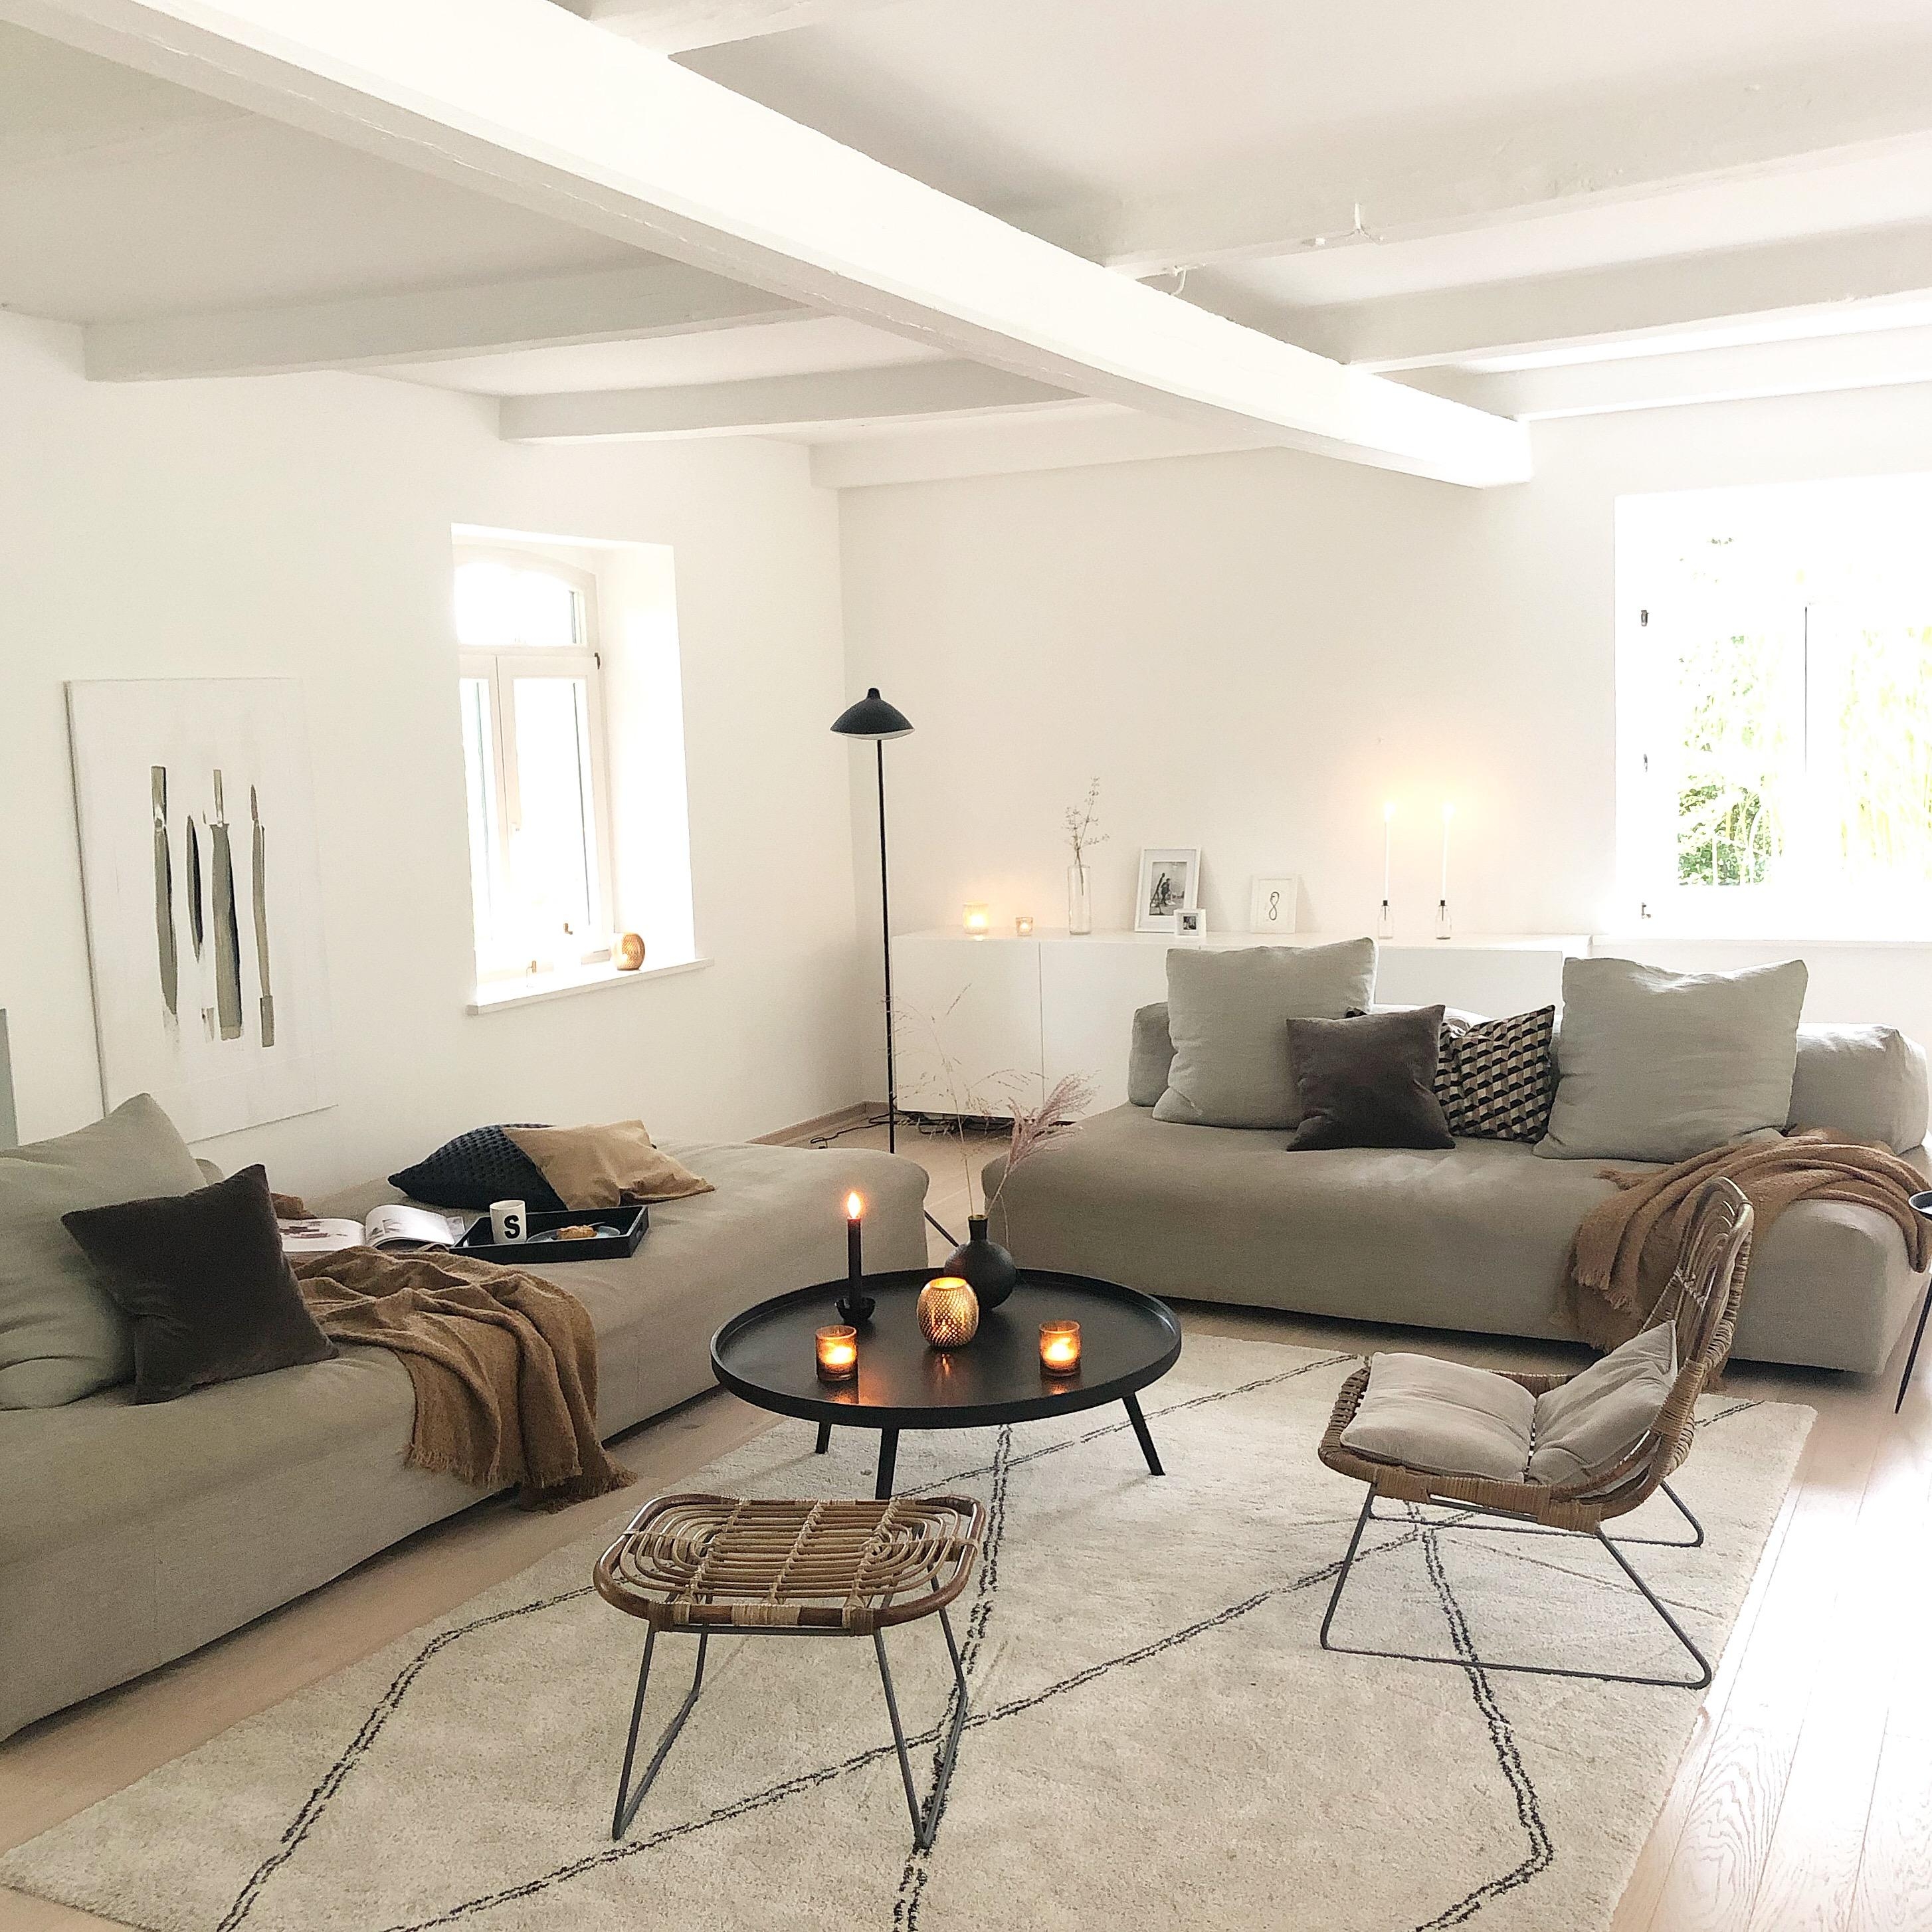 Neues Outfit für die Couch! 

#wohnzimmer #herbstfarben #minimalistisch #cozy #scandinavisch